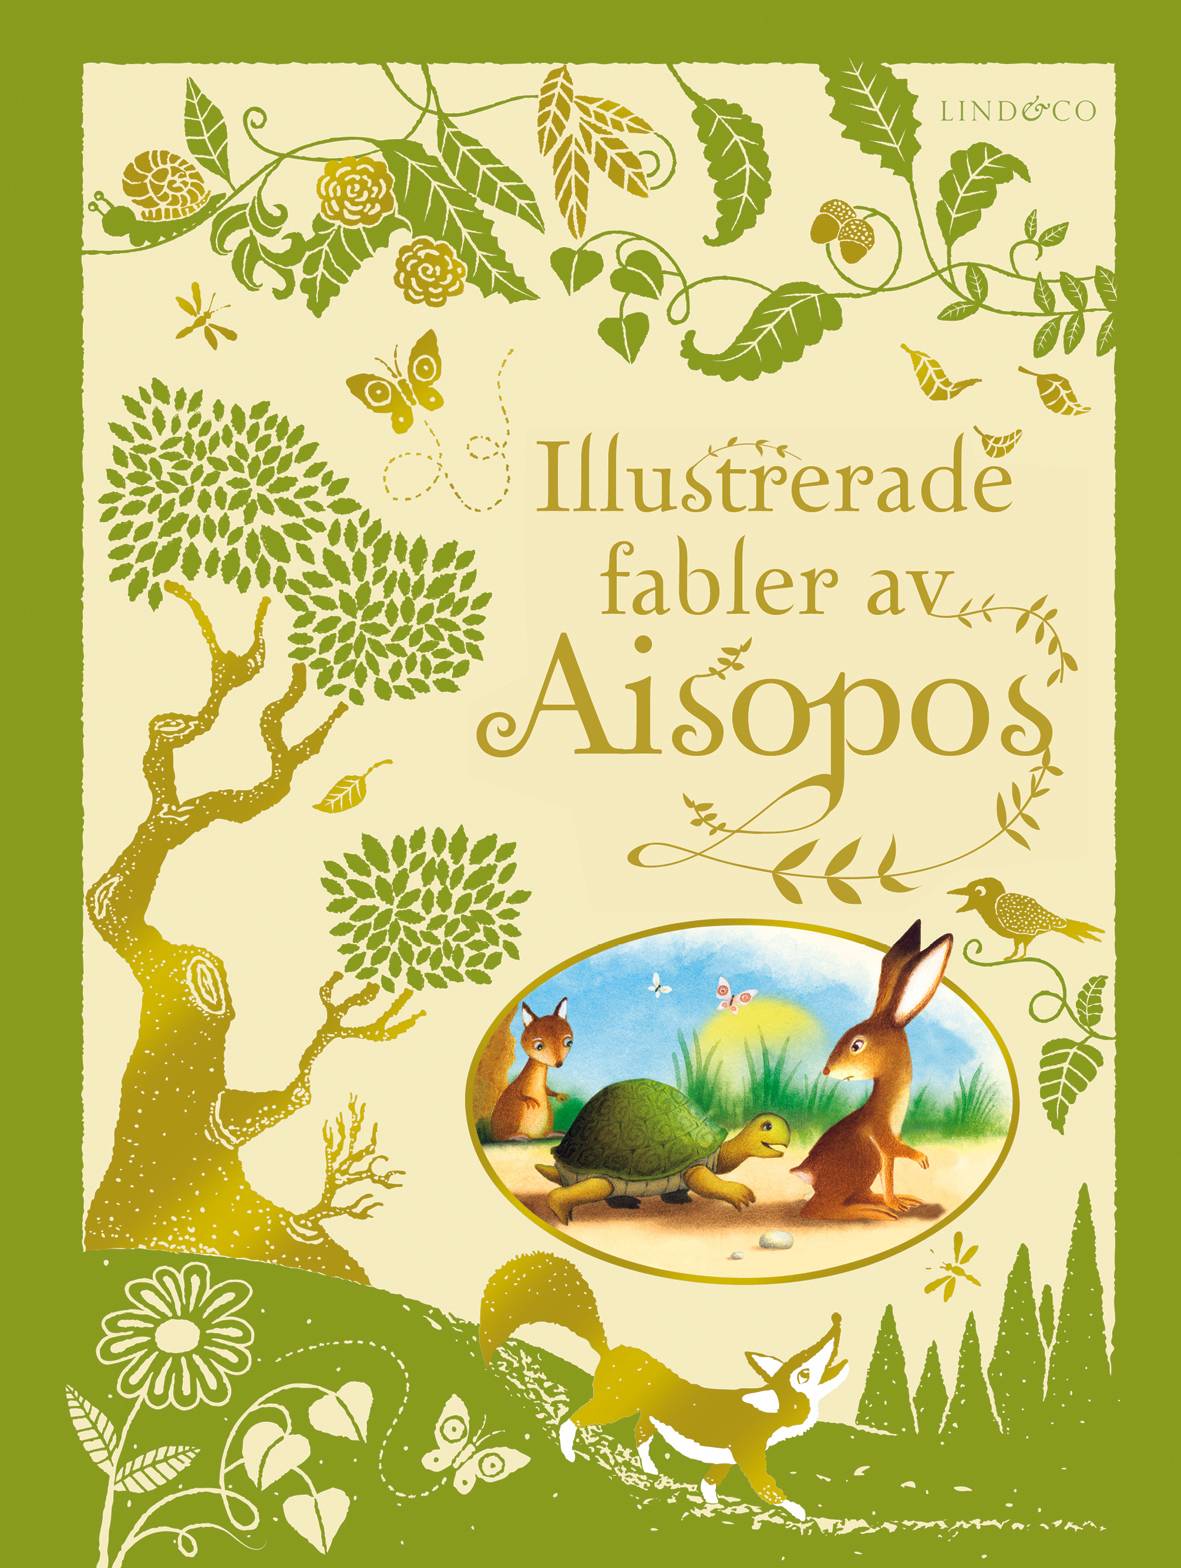 Illustrerade fabler av Aisopos